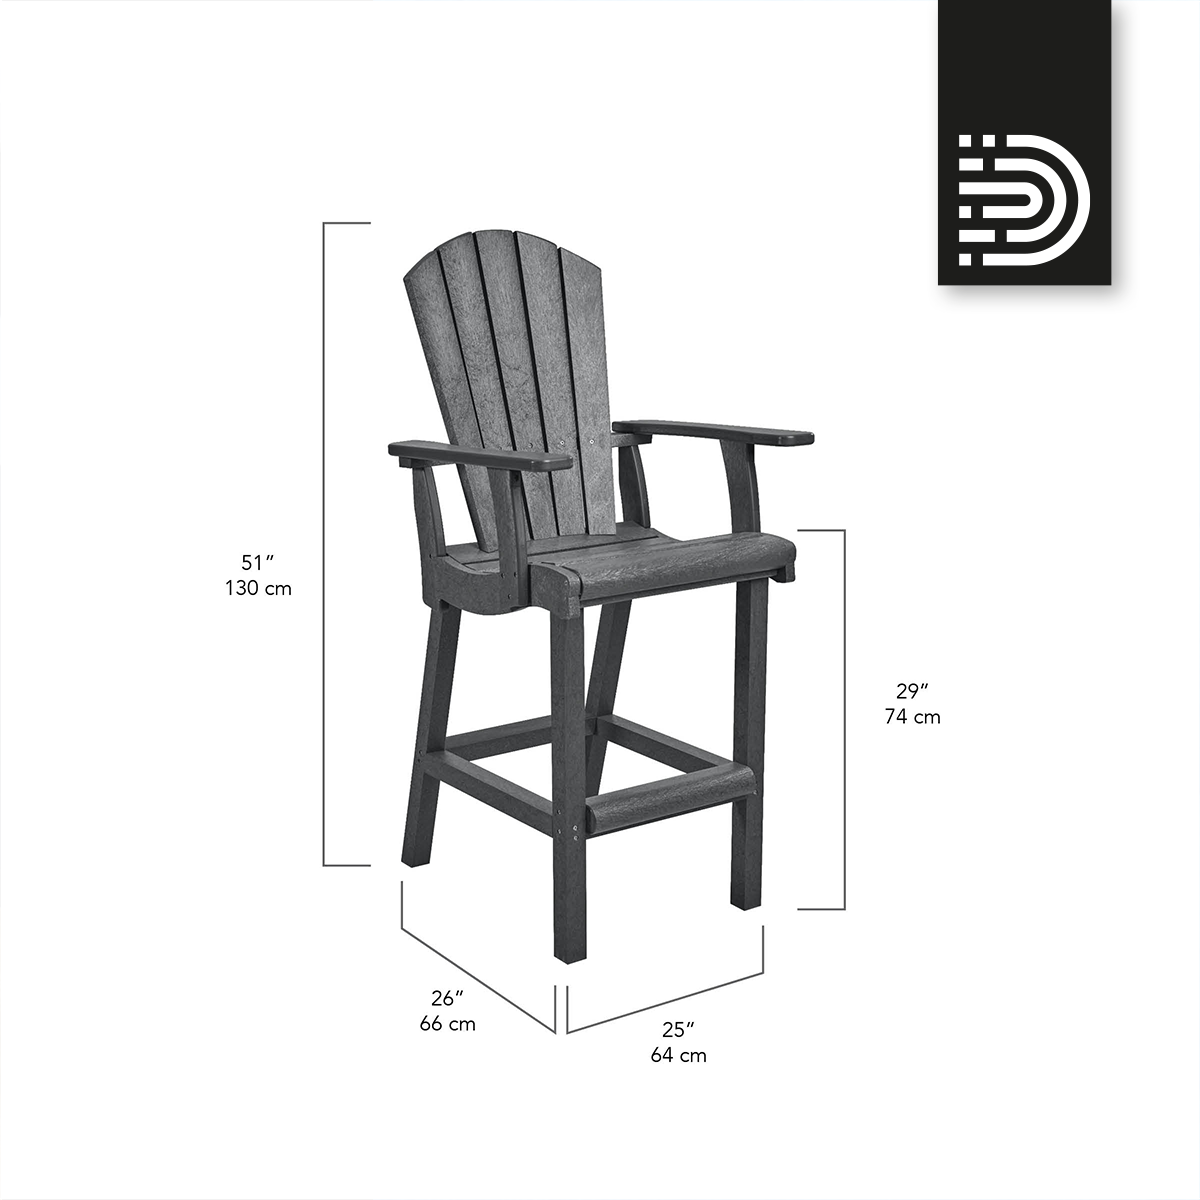 C28 Classic Pub Chair - 02 White